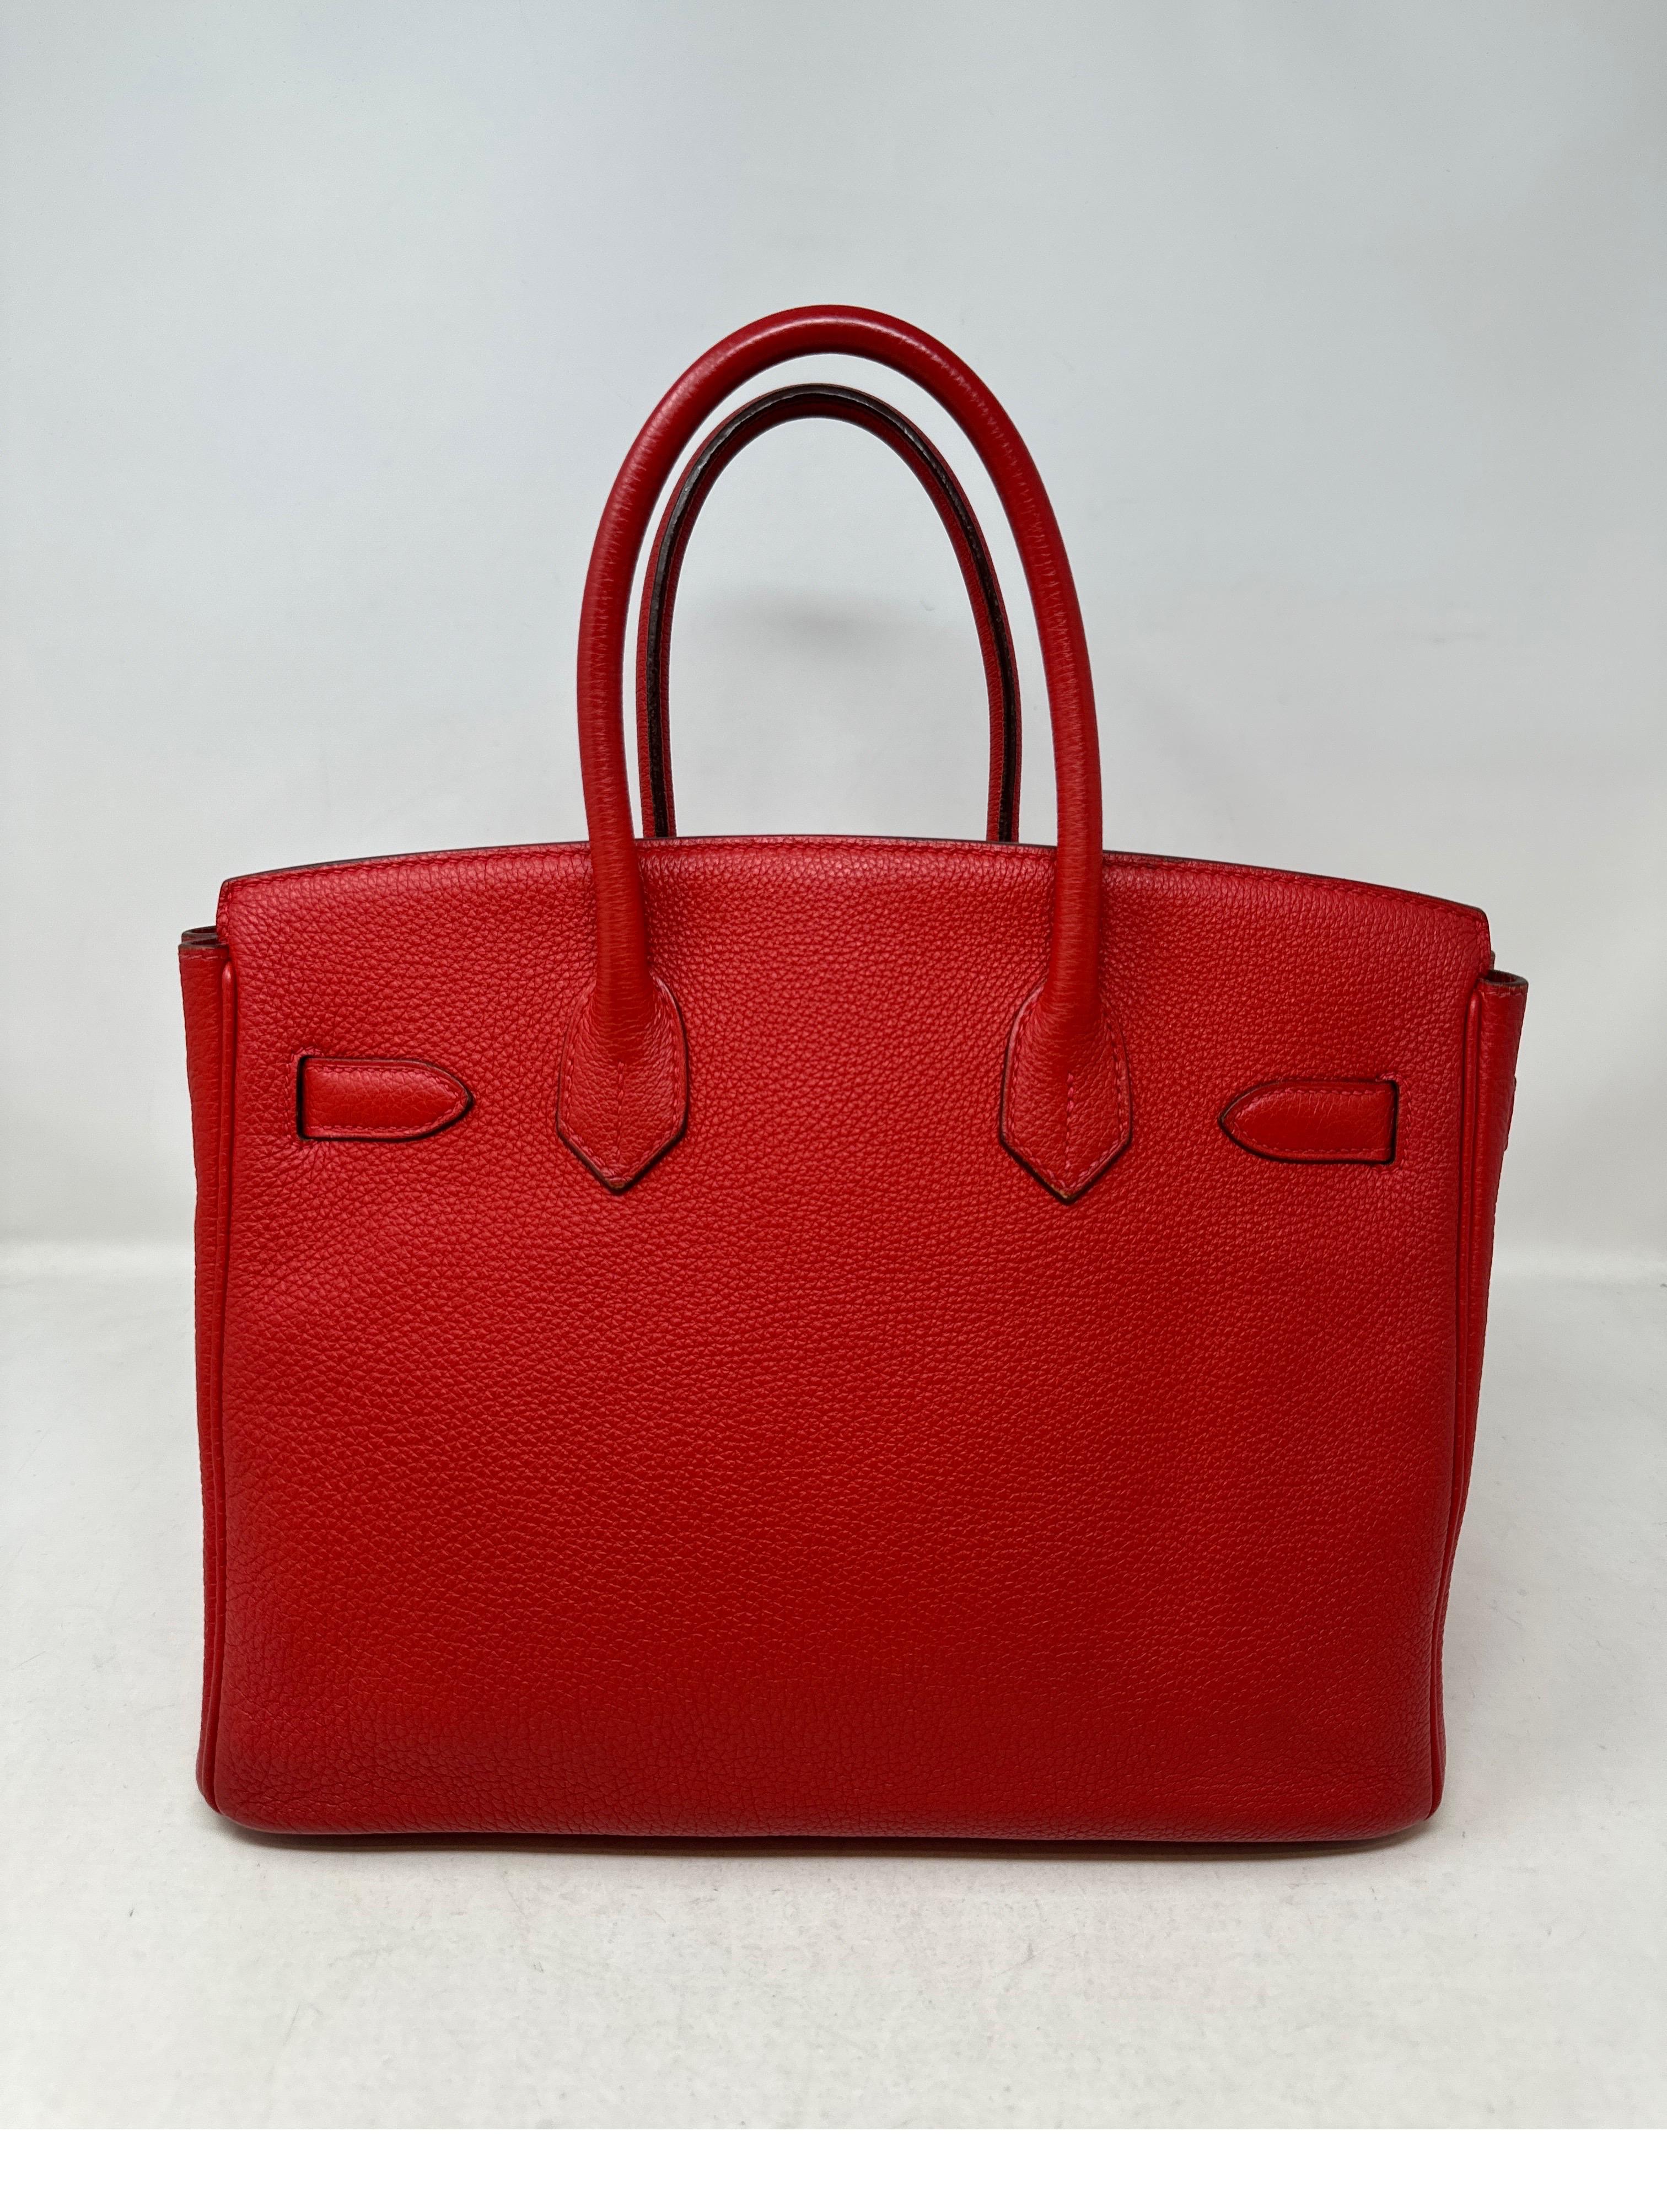  Hermès - Sac Birkin 30 Rouge Garance  Unisexe 